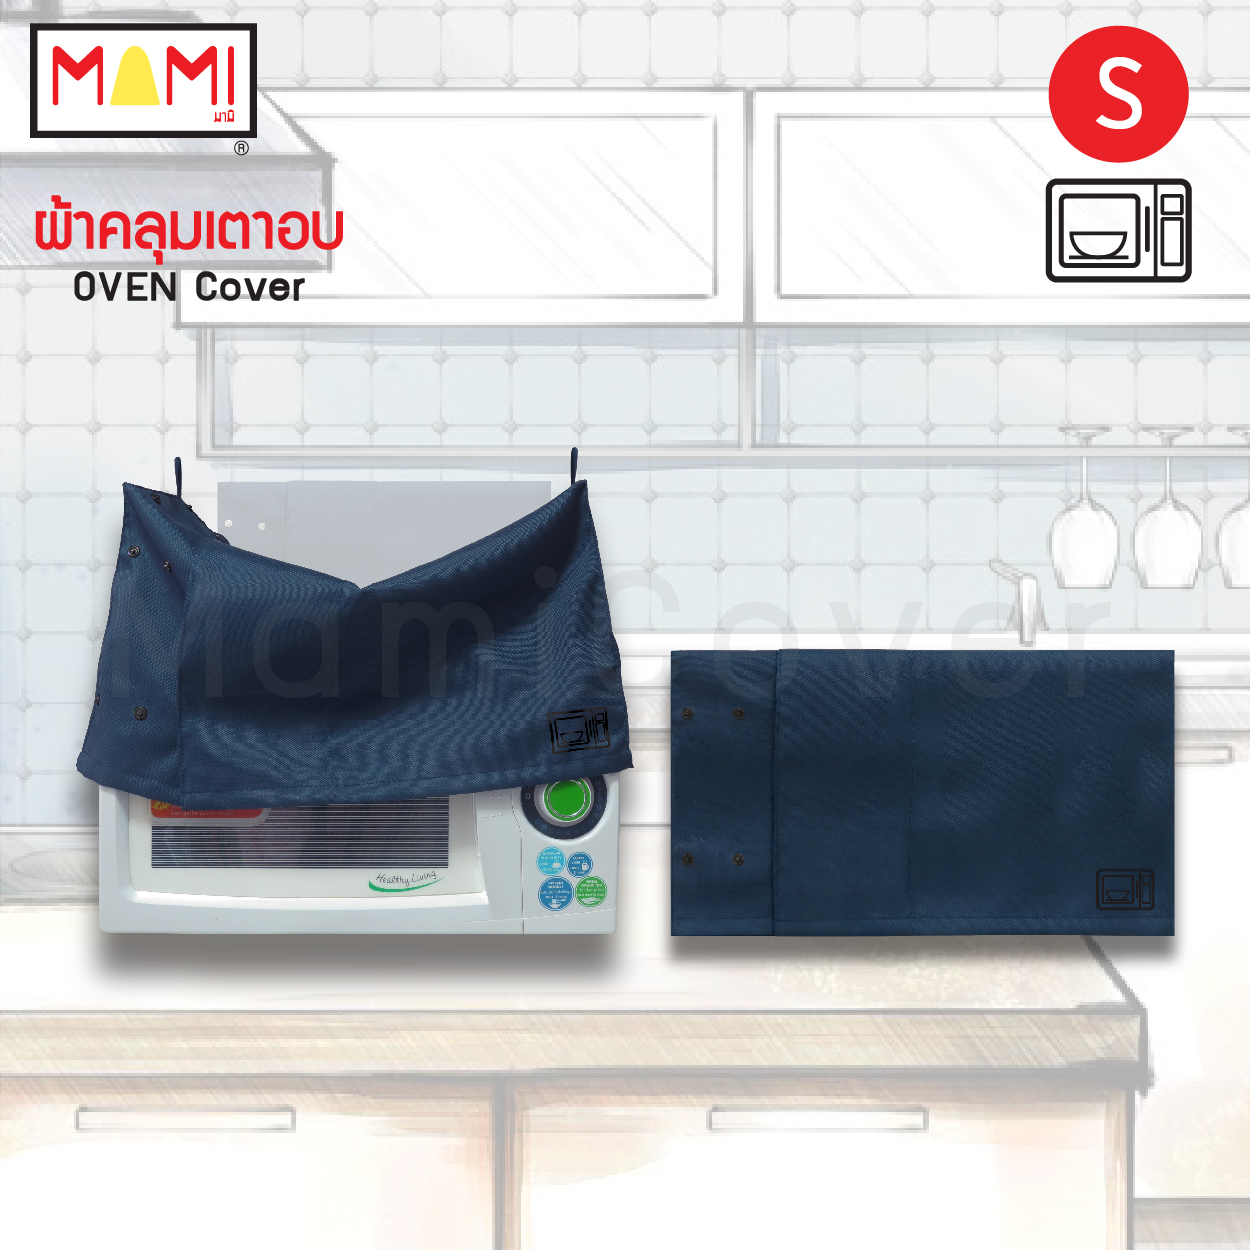 ผ้าคลุมเตาอบ ผ้าคลุมเตาไมโครเวฟ Mami กันฝุ่น กันคราบน้ำมัน Oven Cover Microwave Oven Cover